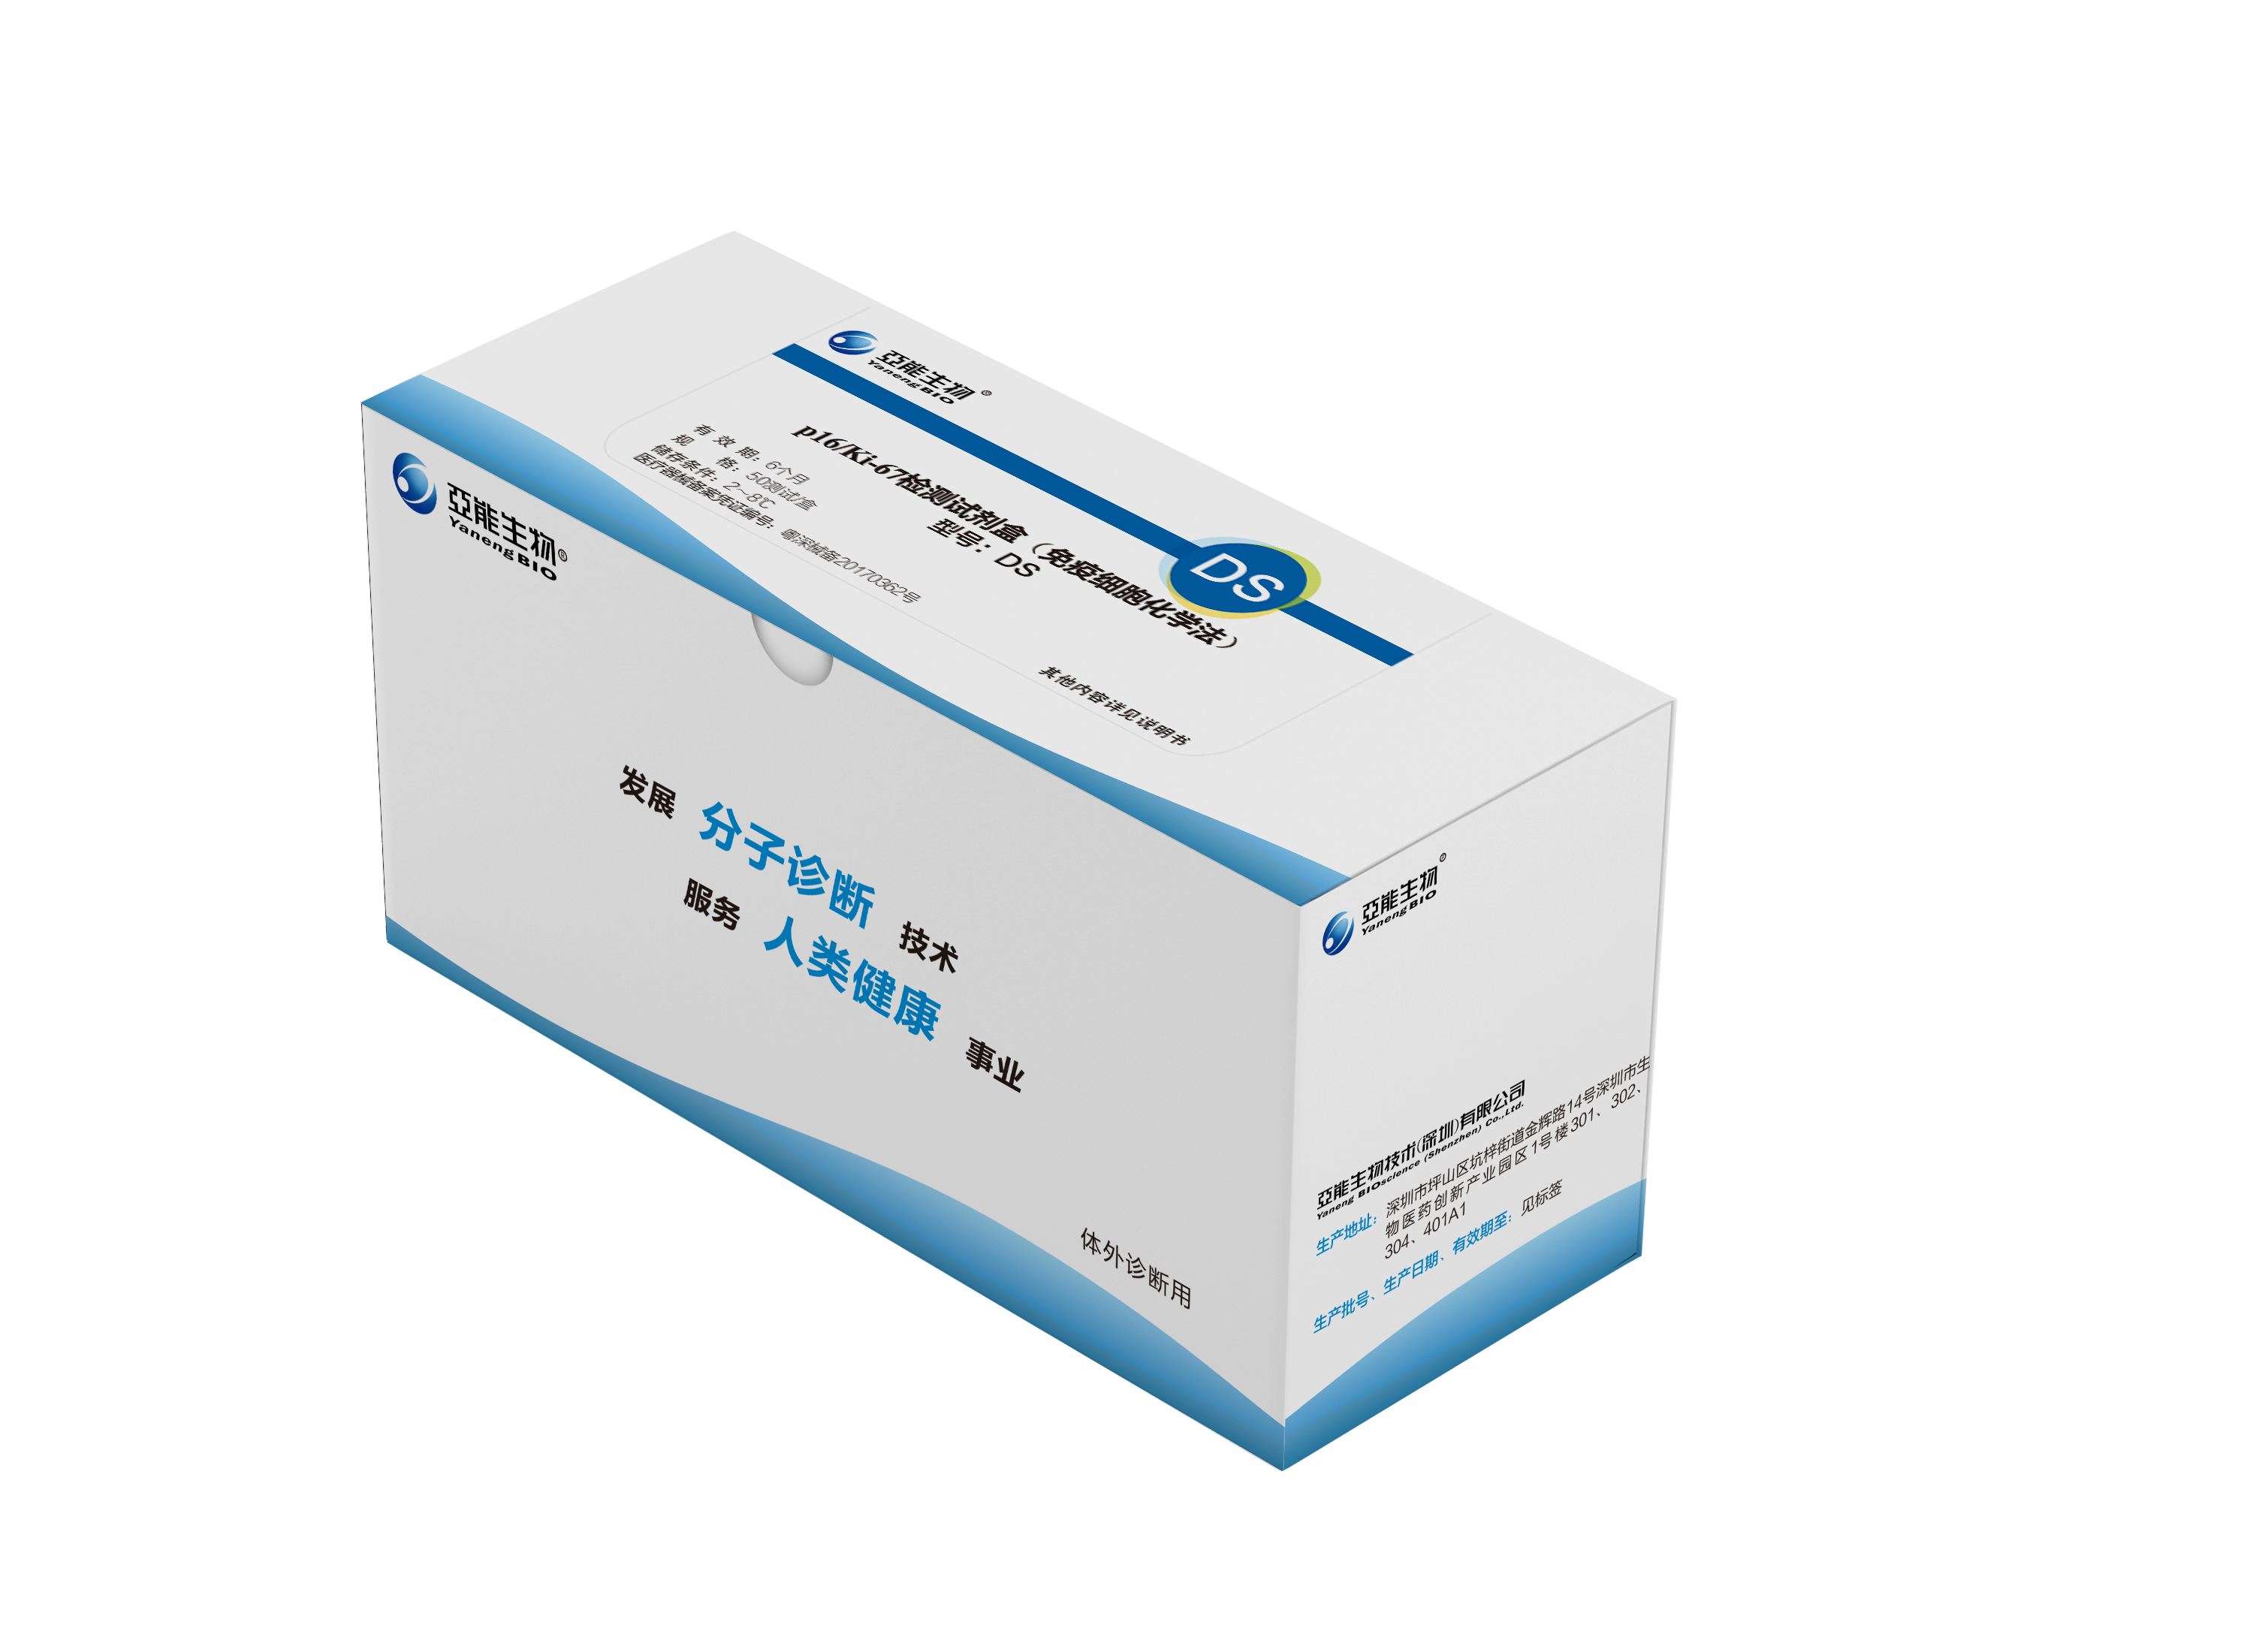 【亚能】p16/Ki-67检测试剂盒(免疫细胞化学法)